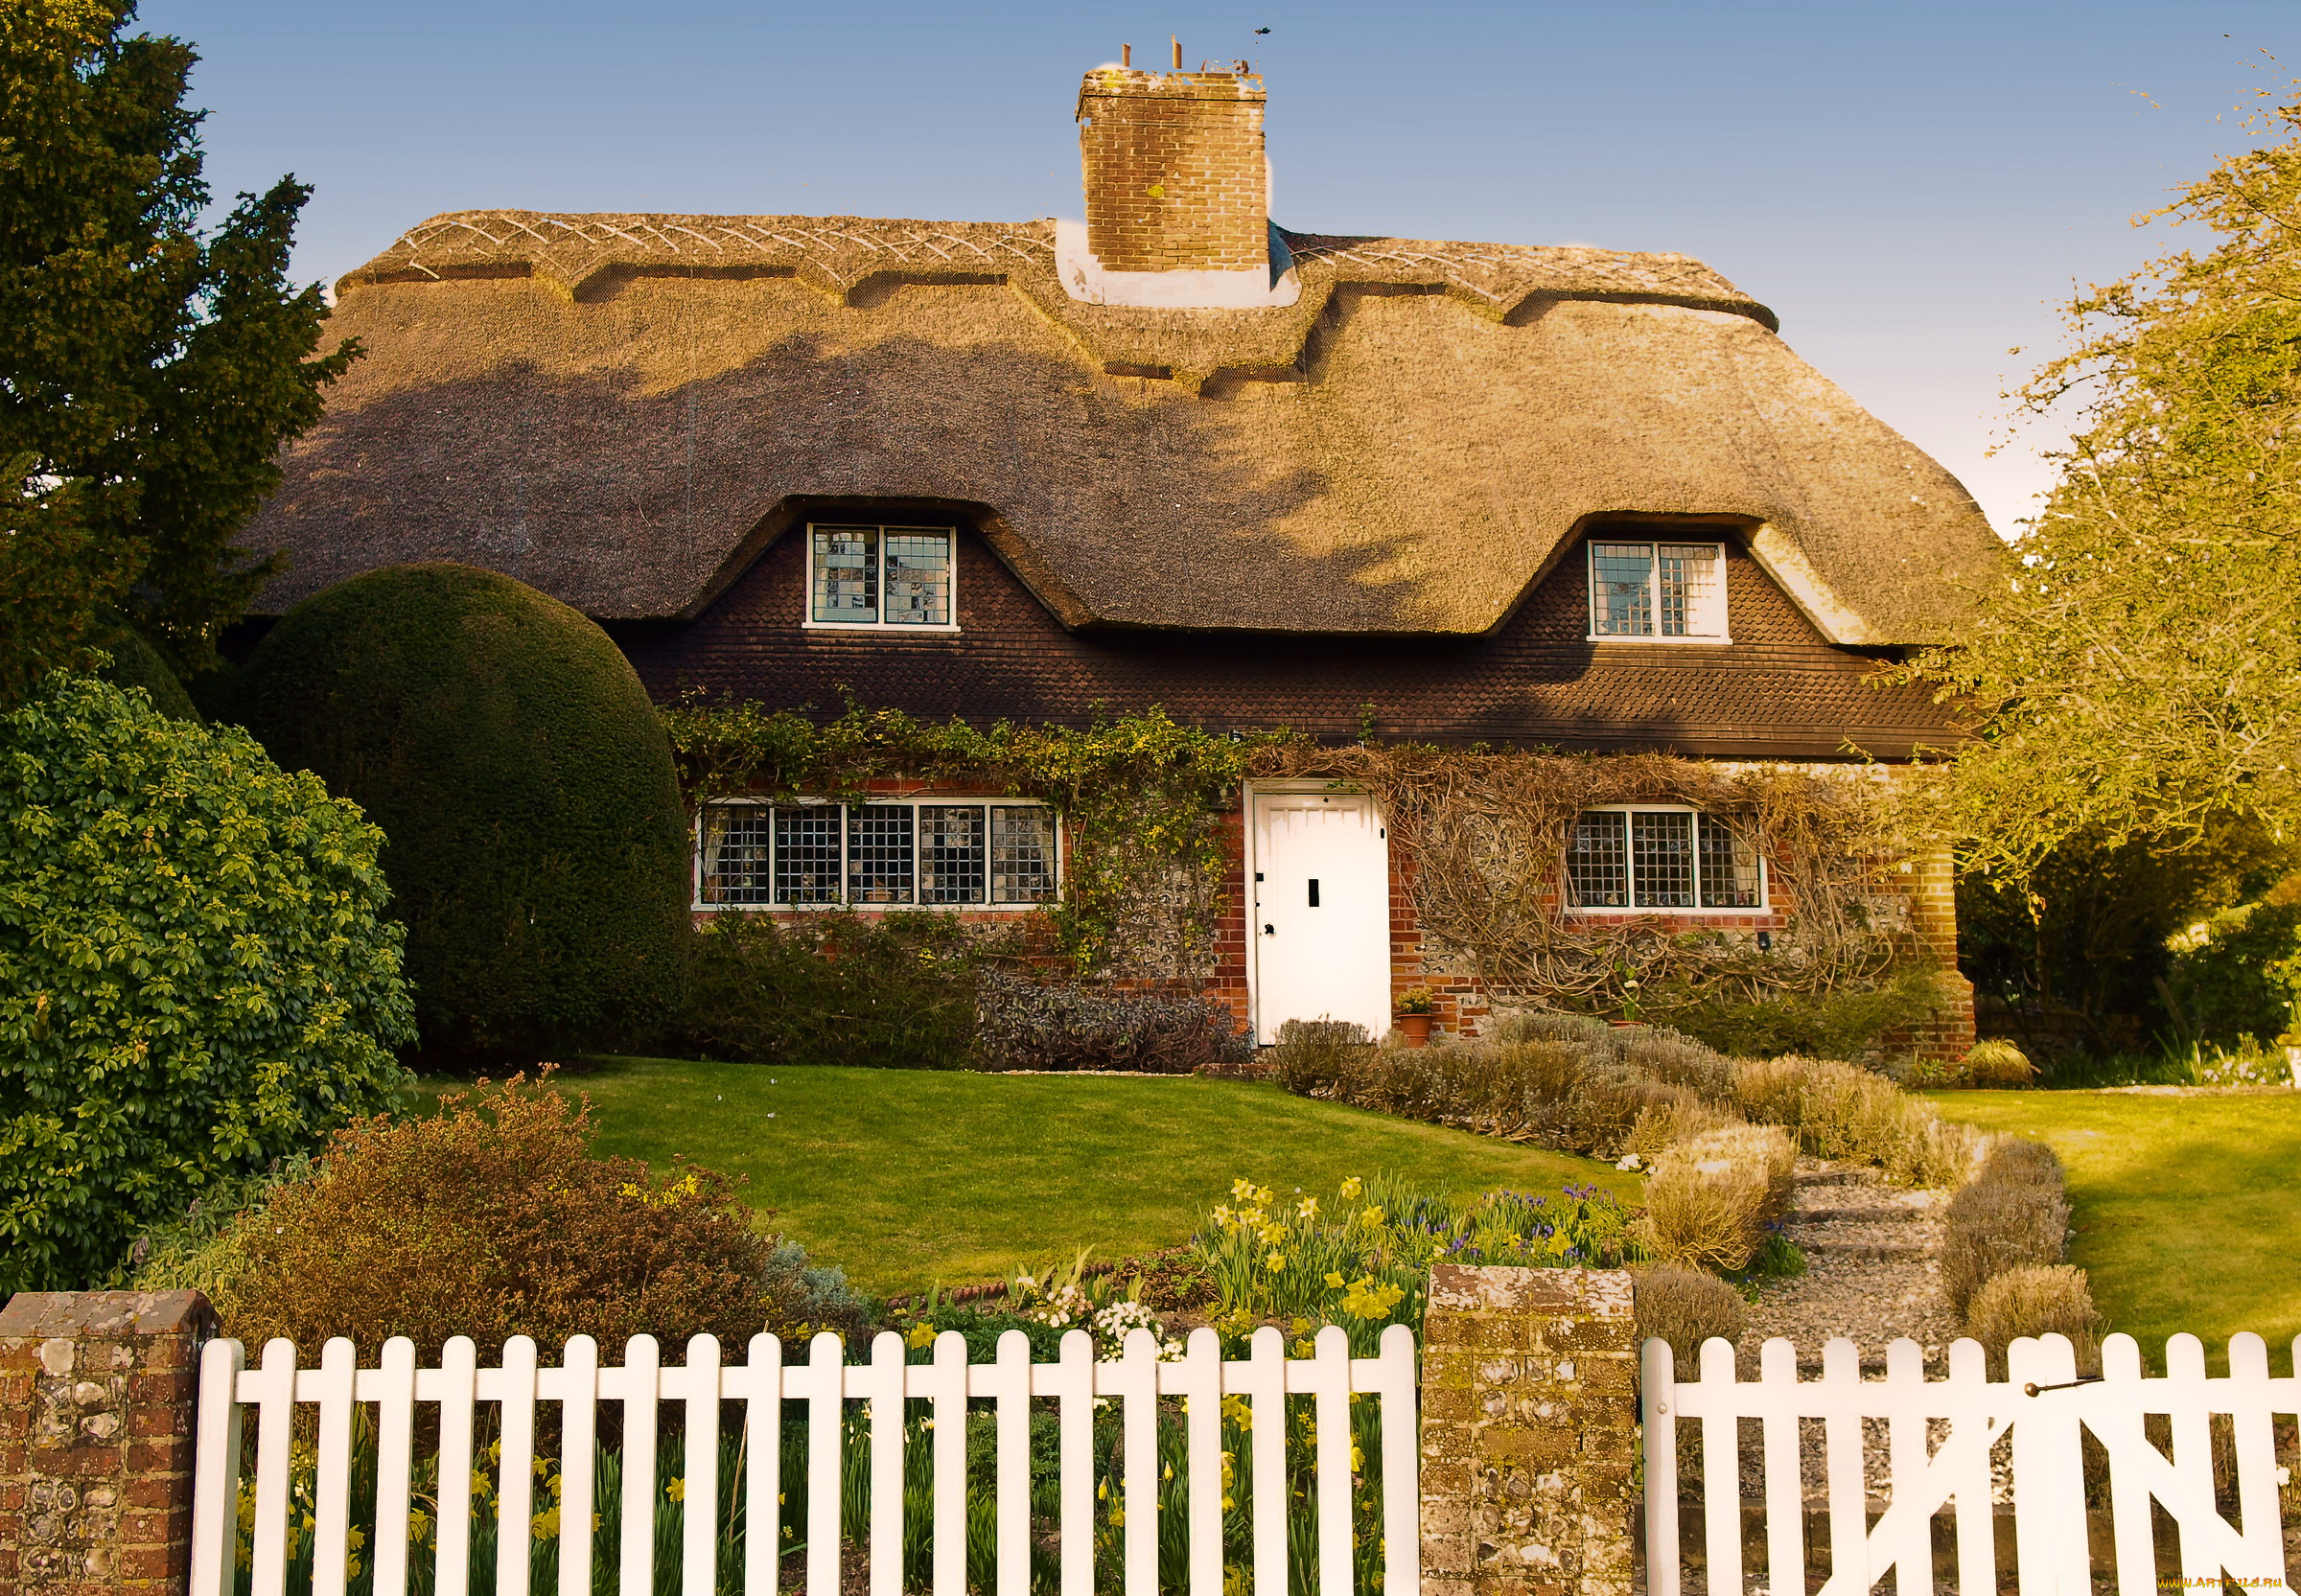 Домик с соломеенной крышей, Англия без смс